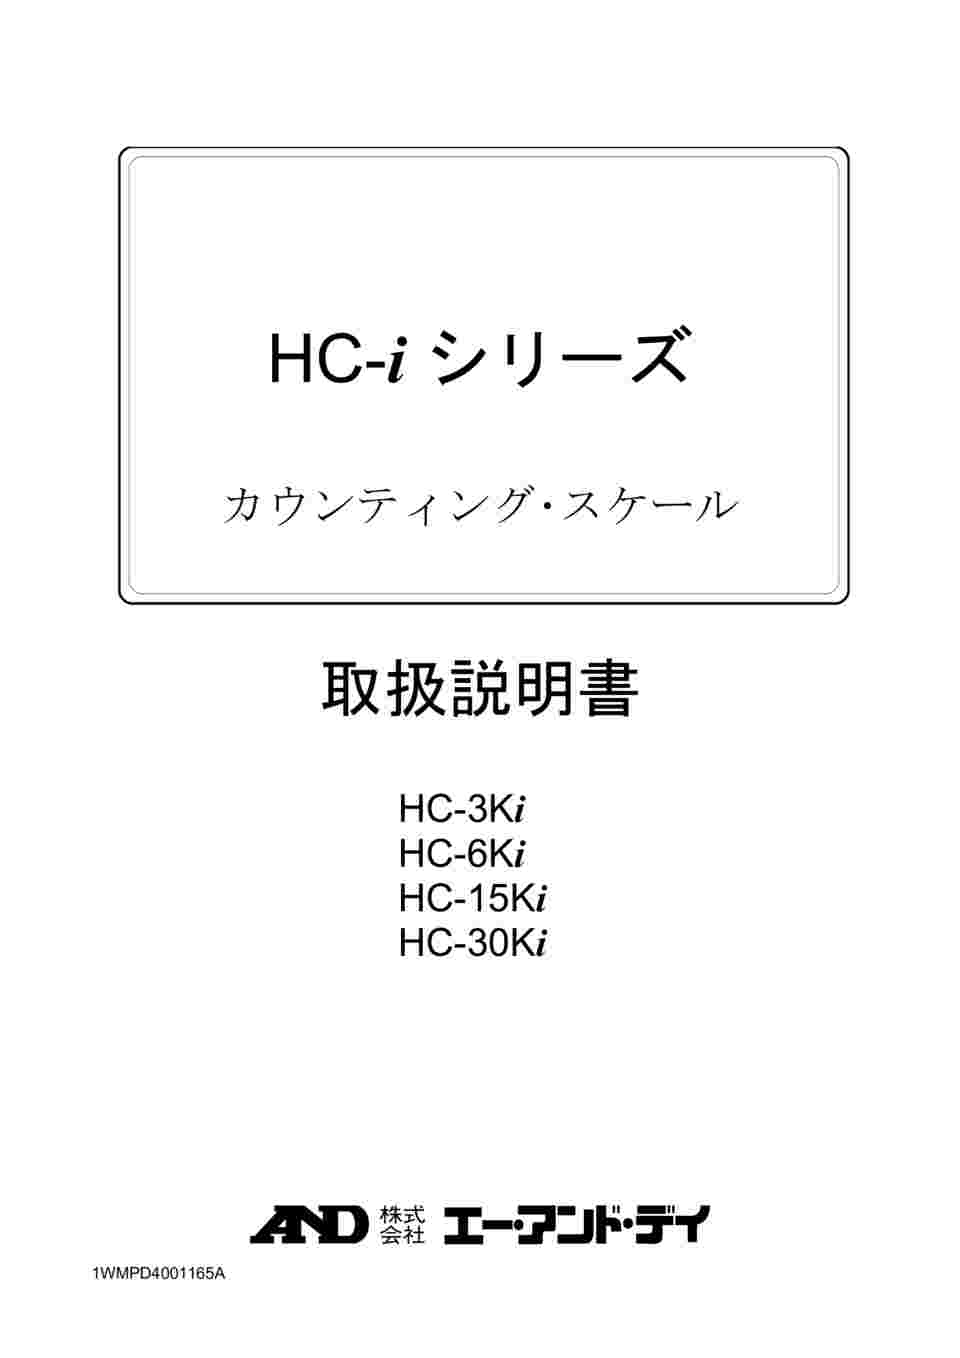 64-4049-39 セパレート可能 カウンティング・スケール(個数計) HC-i